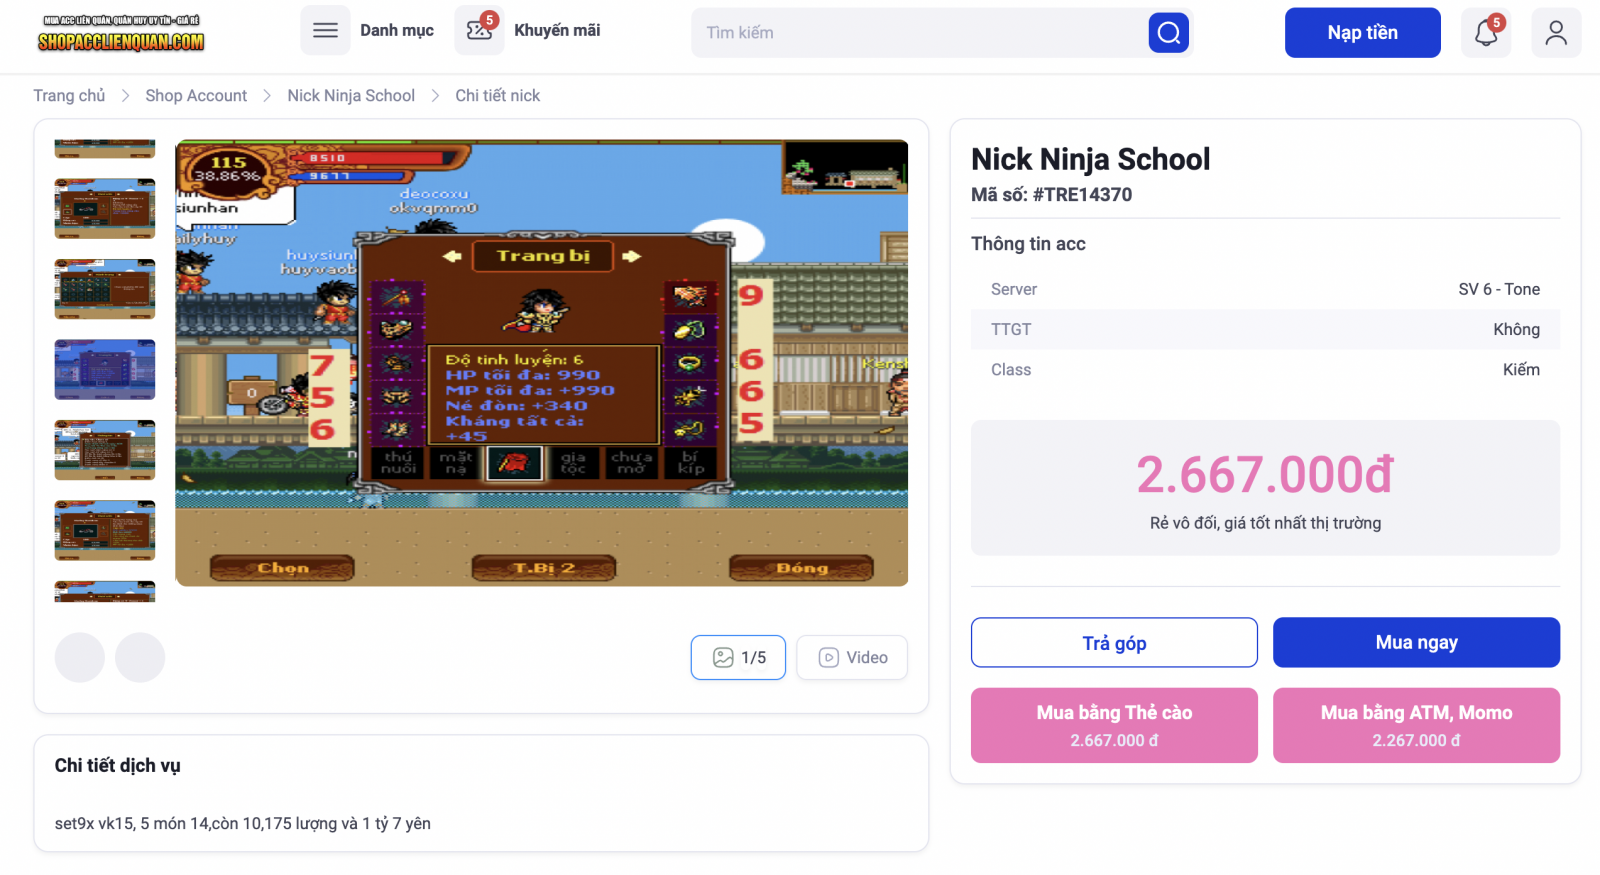 Kiểm tra lại thông tin nick Ninja School và tiến hành thanh toán